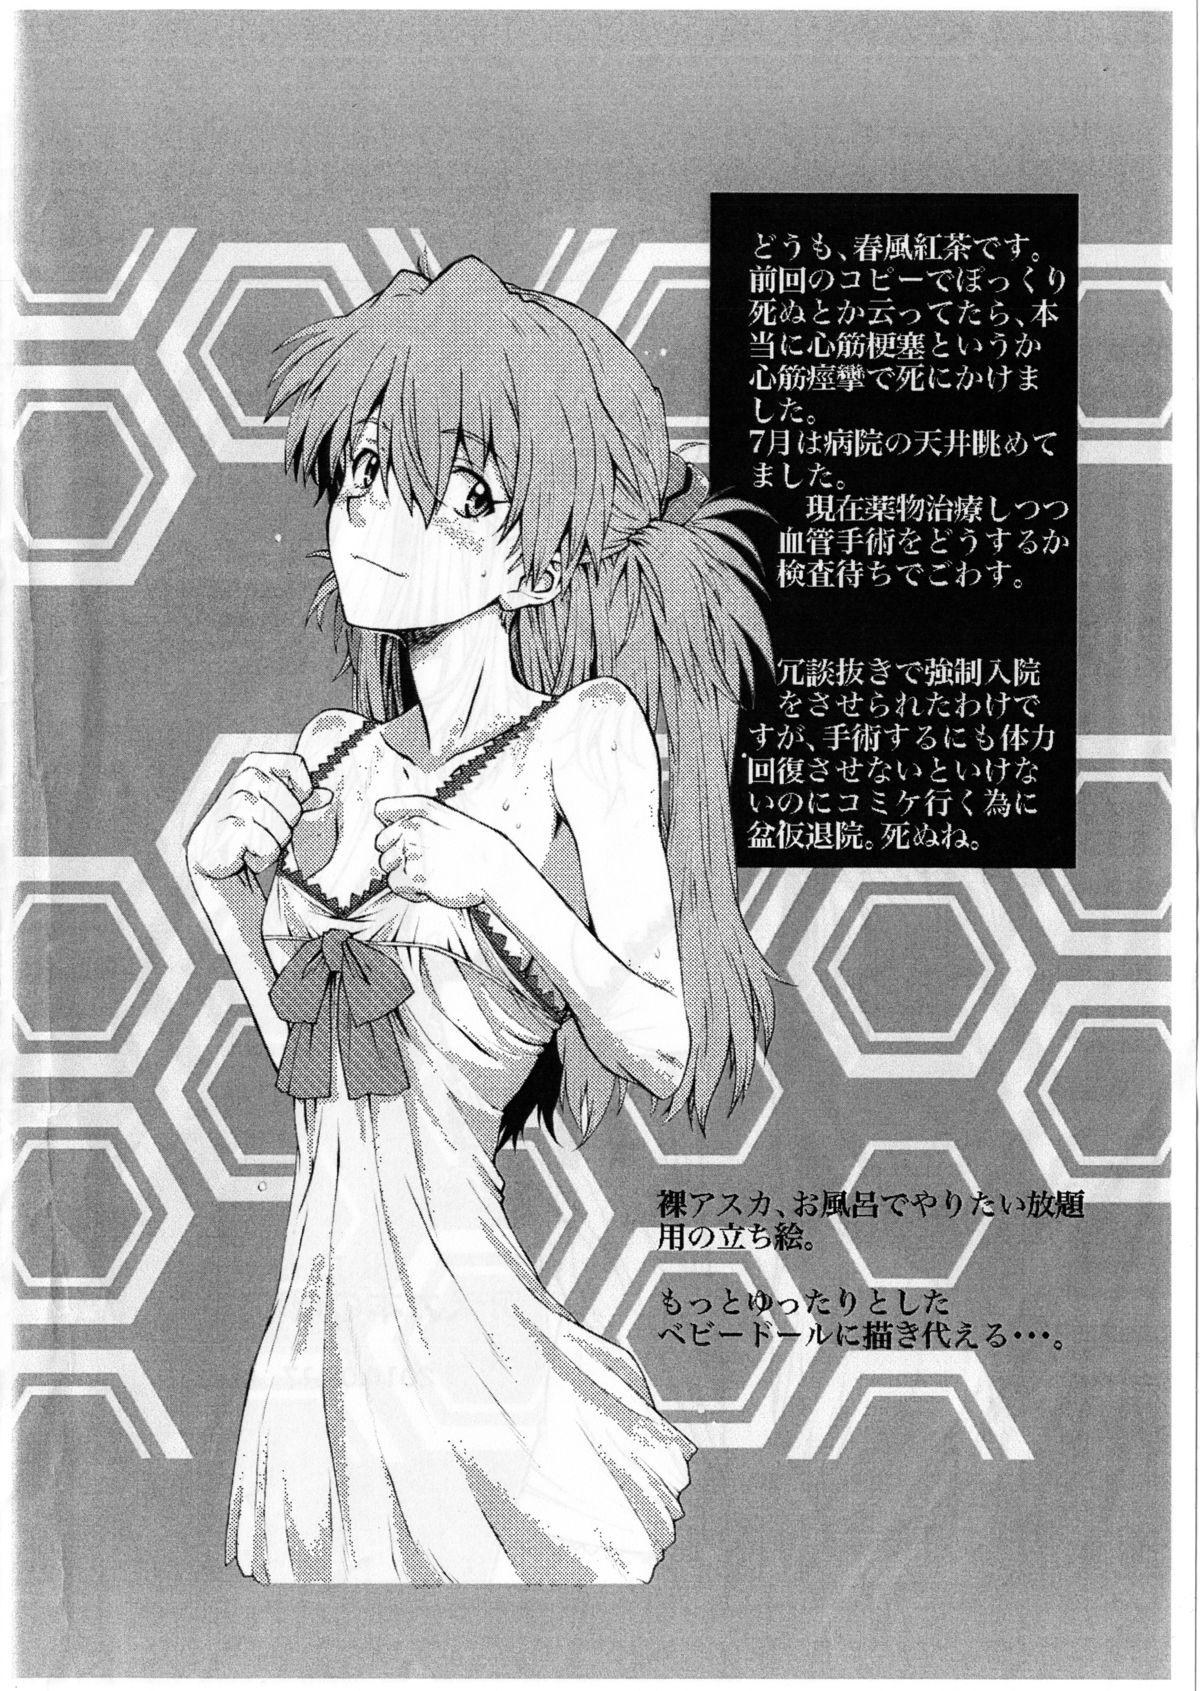 Dildo Itsumono. Asuka Hon no Genkou Tochuu Mono. - Neon genesis evangelion Rola - Page 2